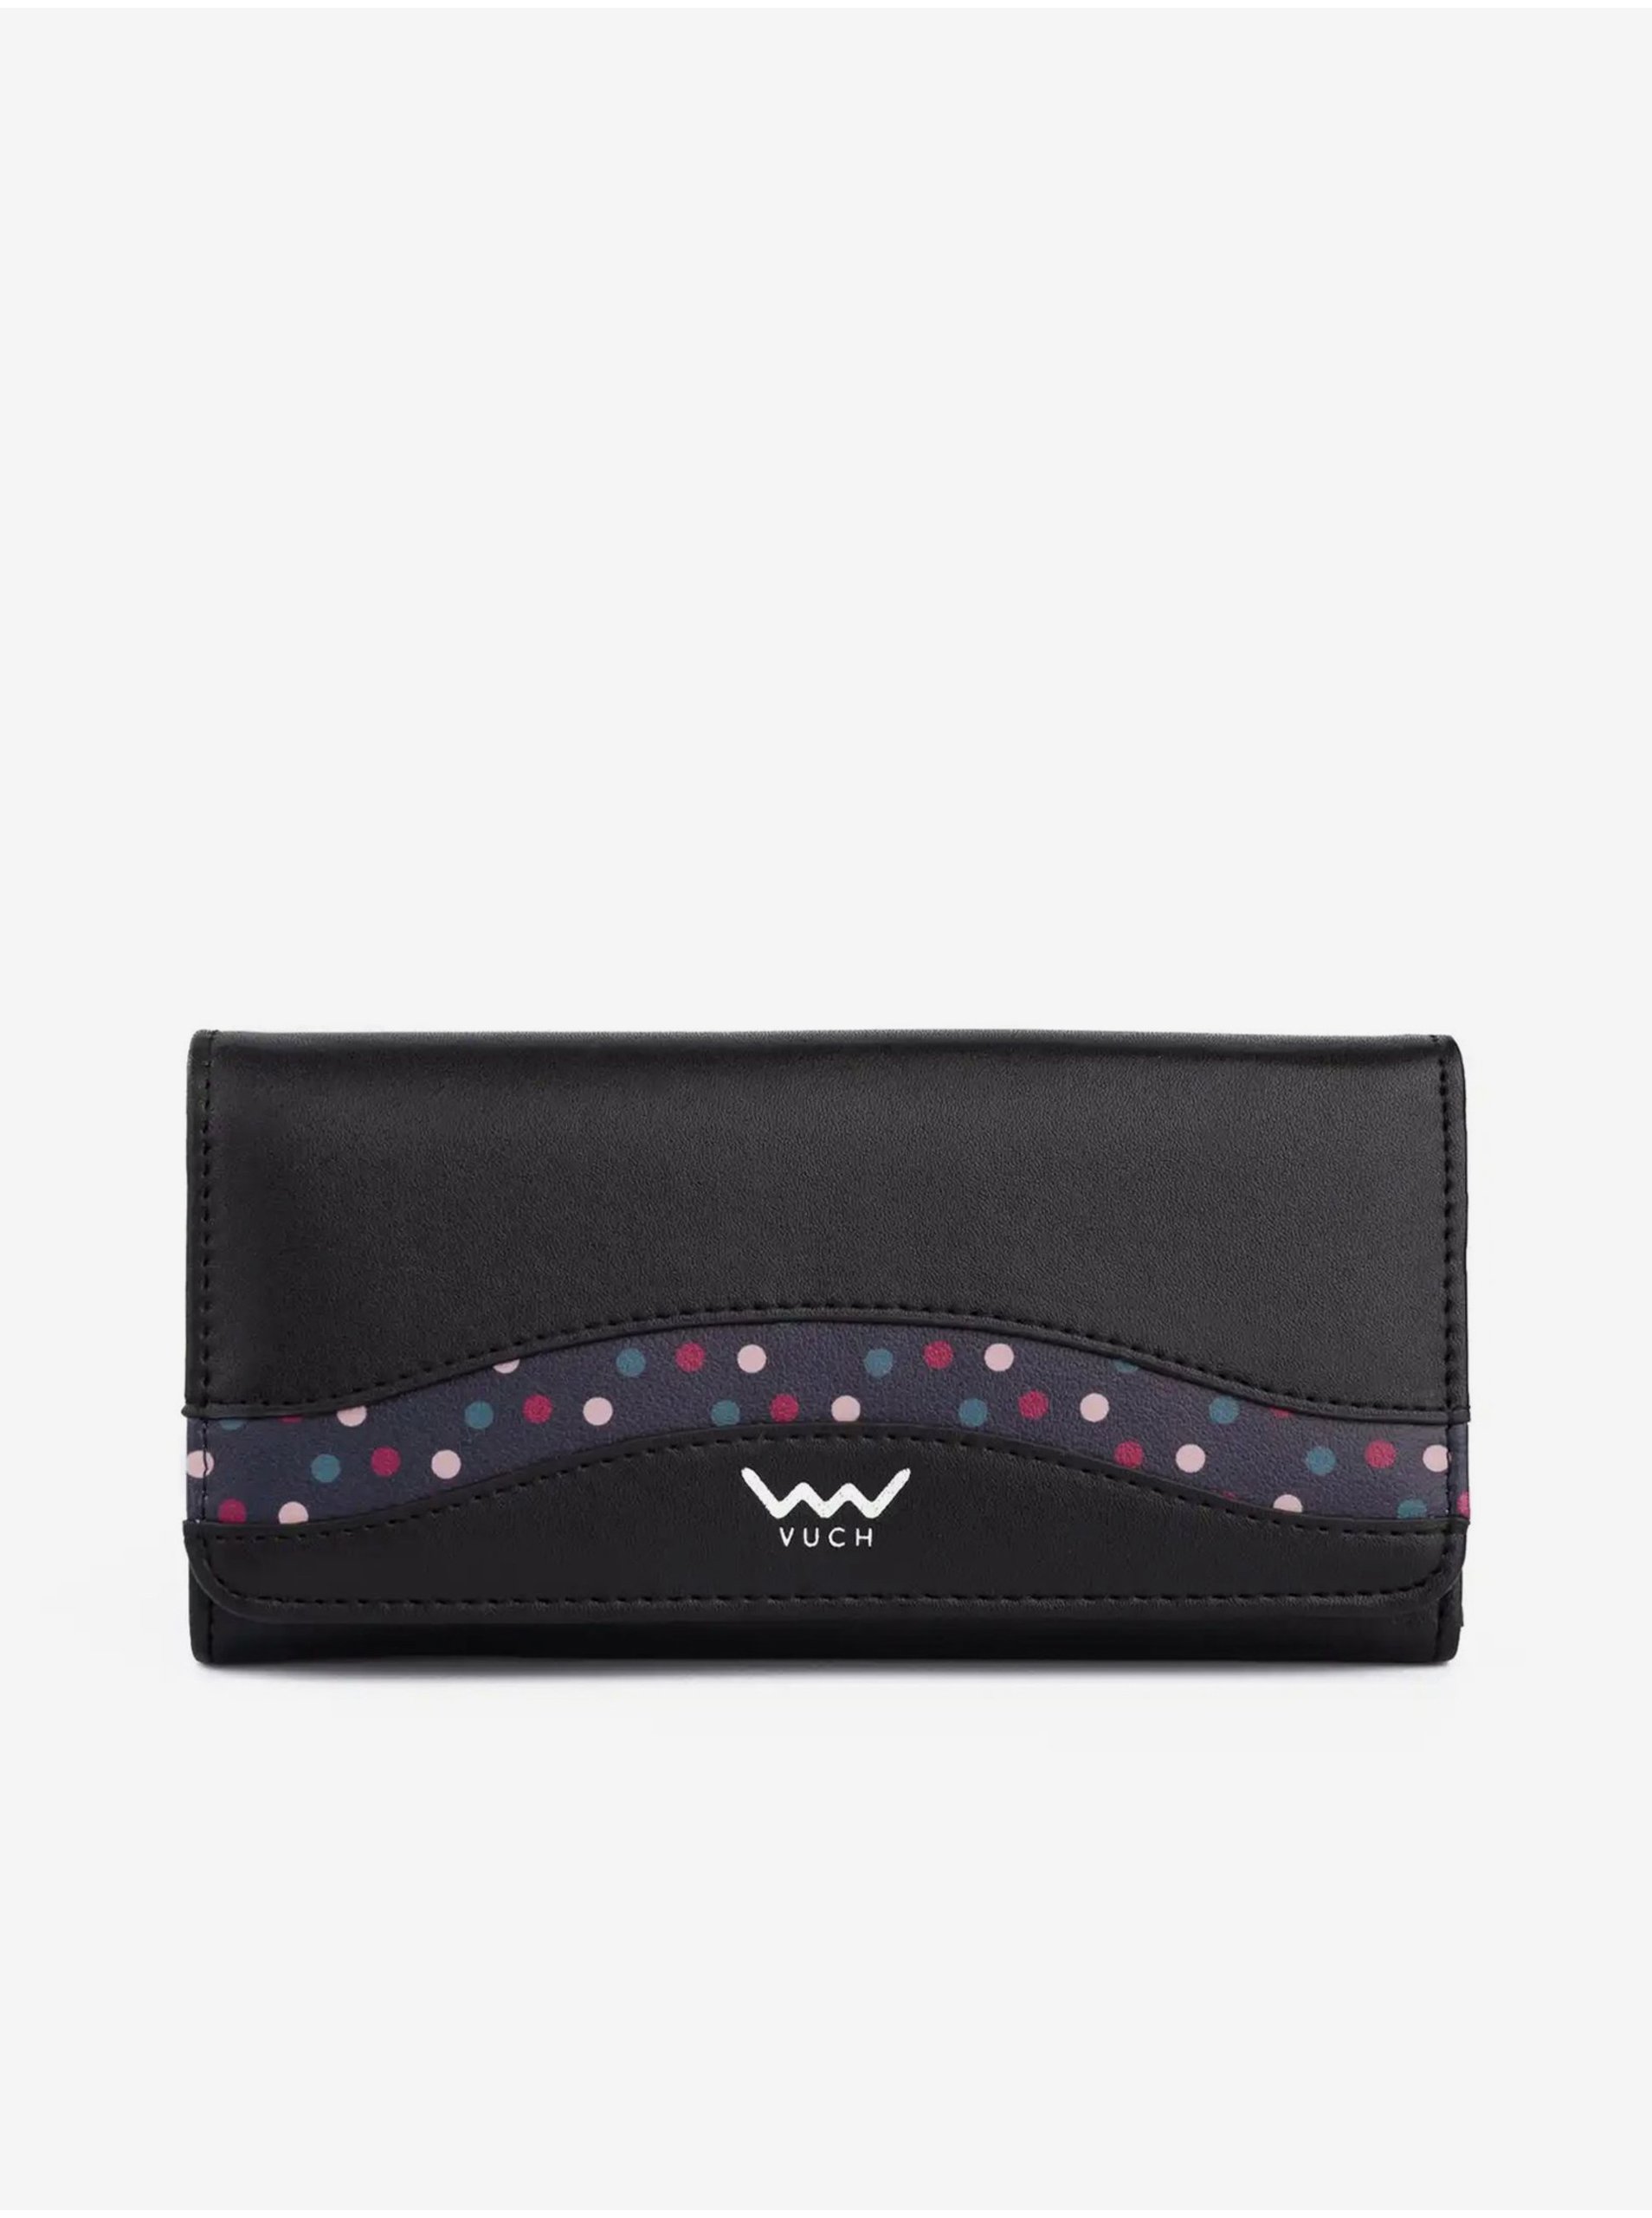 E-shop Peňaženky pre ženy Vuch - čierna, fialová